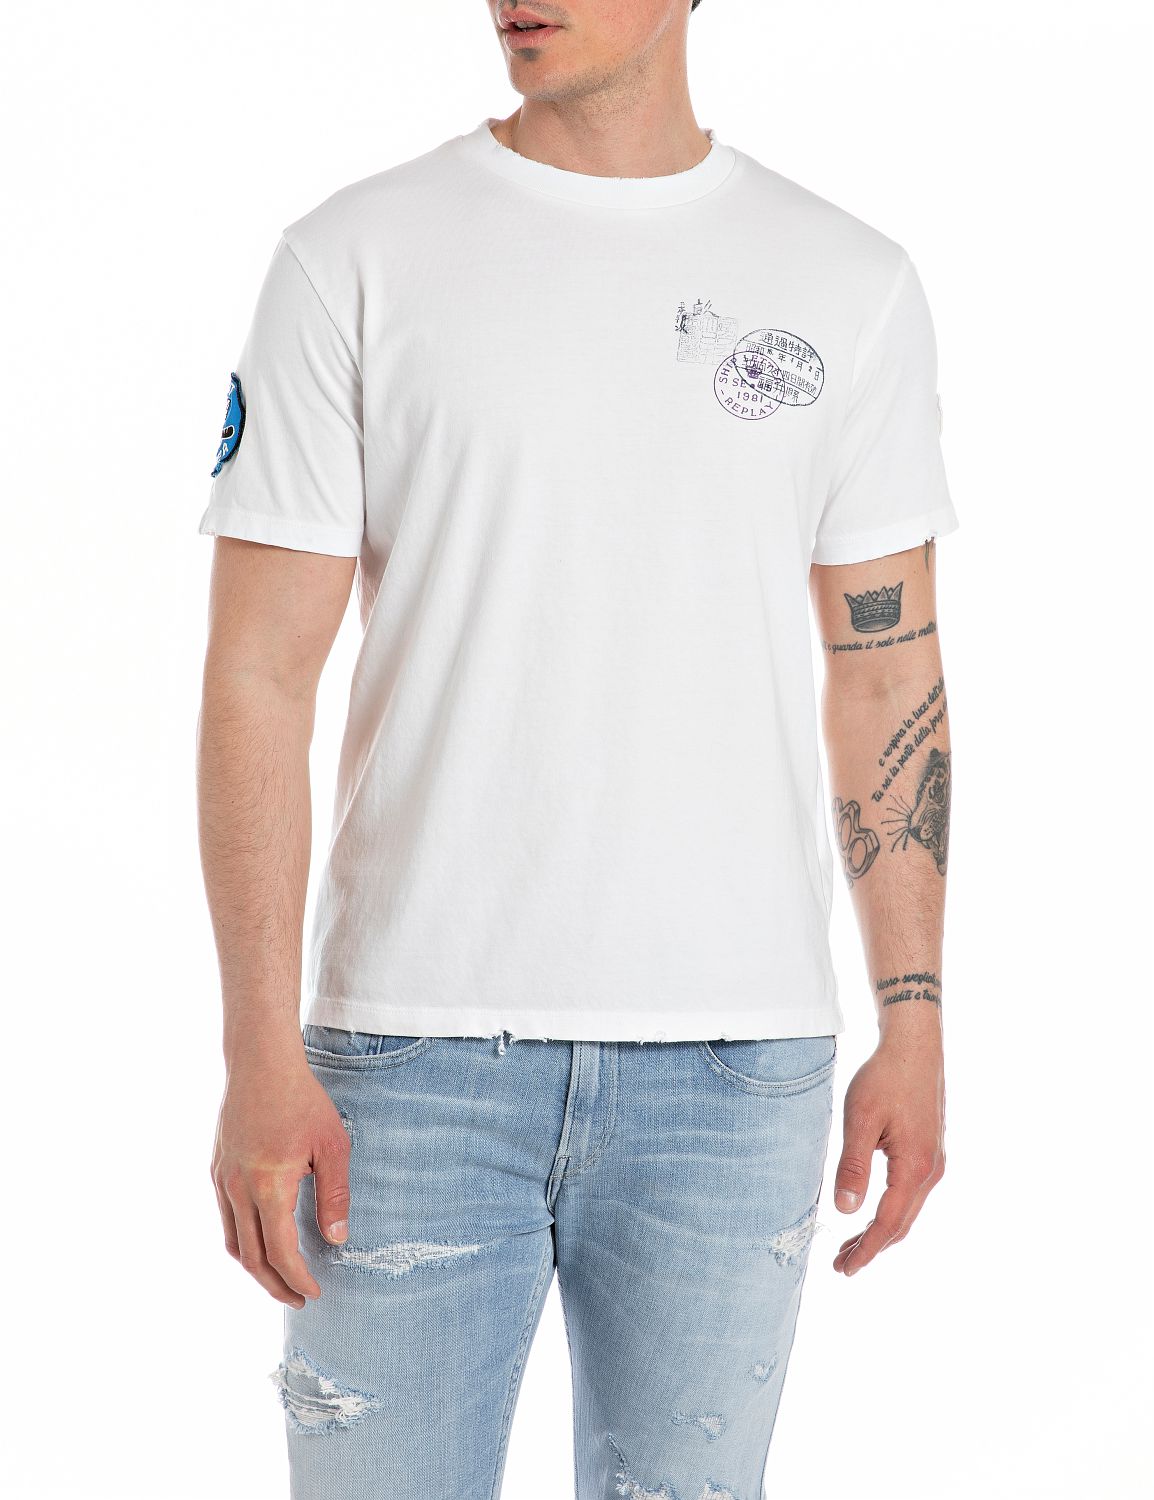 T-shirt REPLAY M6763.000.23608P.801 - White